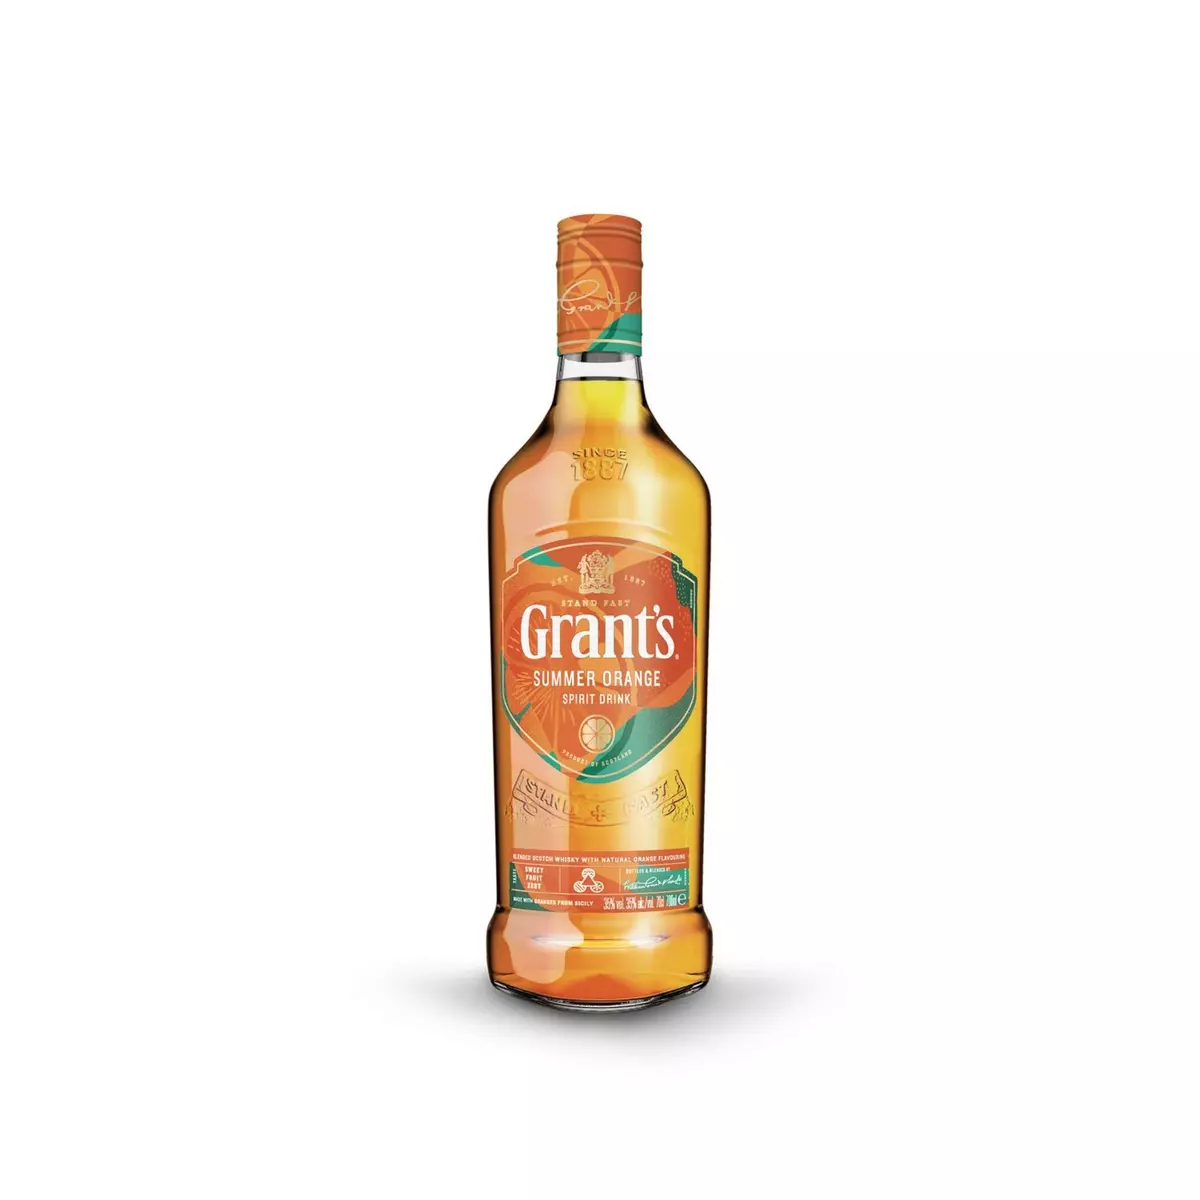 GRANTS Scotch whisky blended malt Summer aux extraits d'orange 35% 70cl